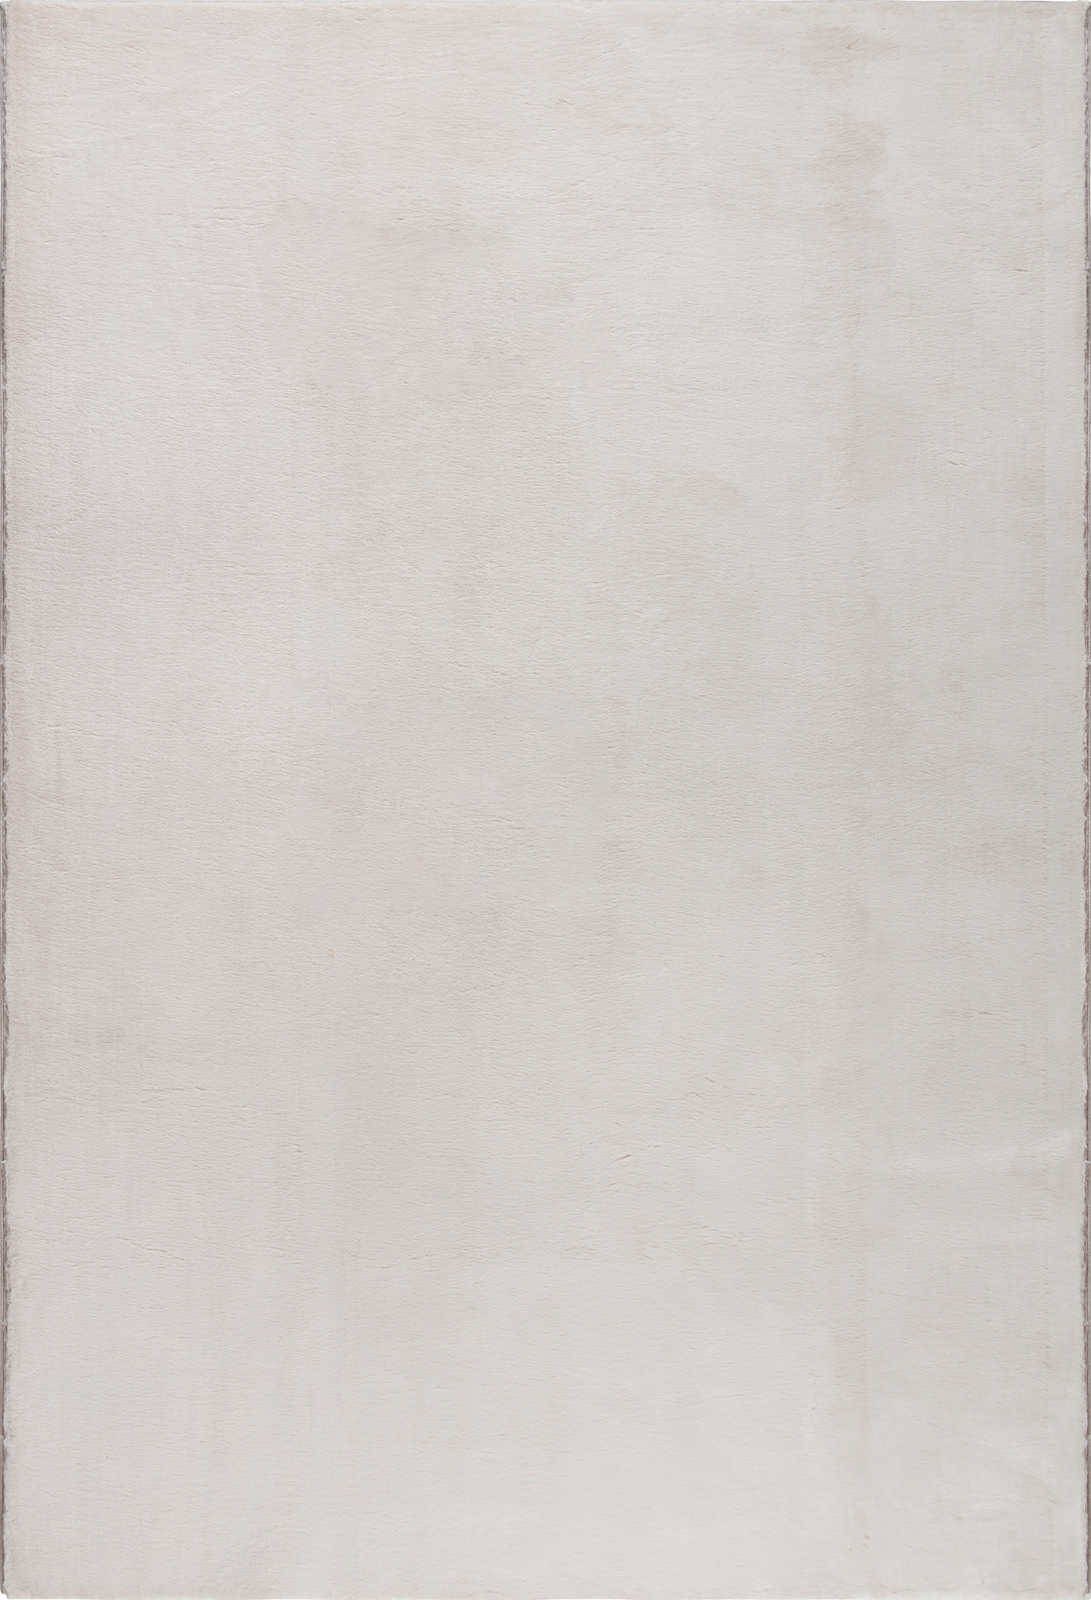             Kuschelweicher Hochflor Teppich in leichtem Beige – 170 x 120 cm
        